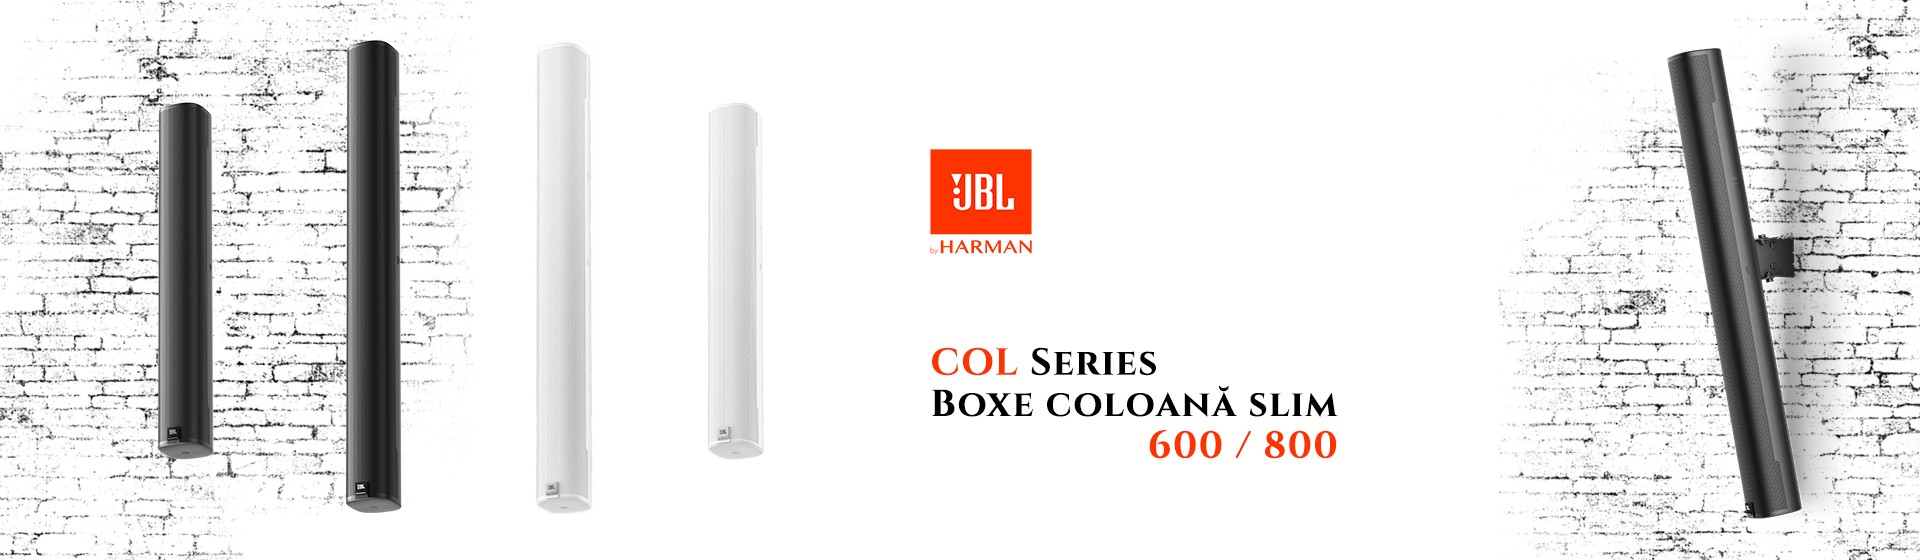 JBL COL 600 & 800 - Boxe Coloana Slim Perete